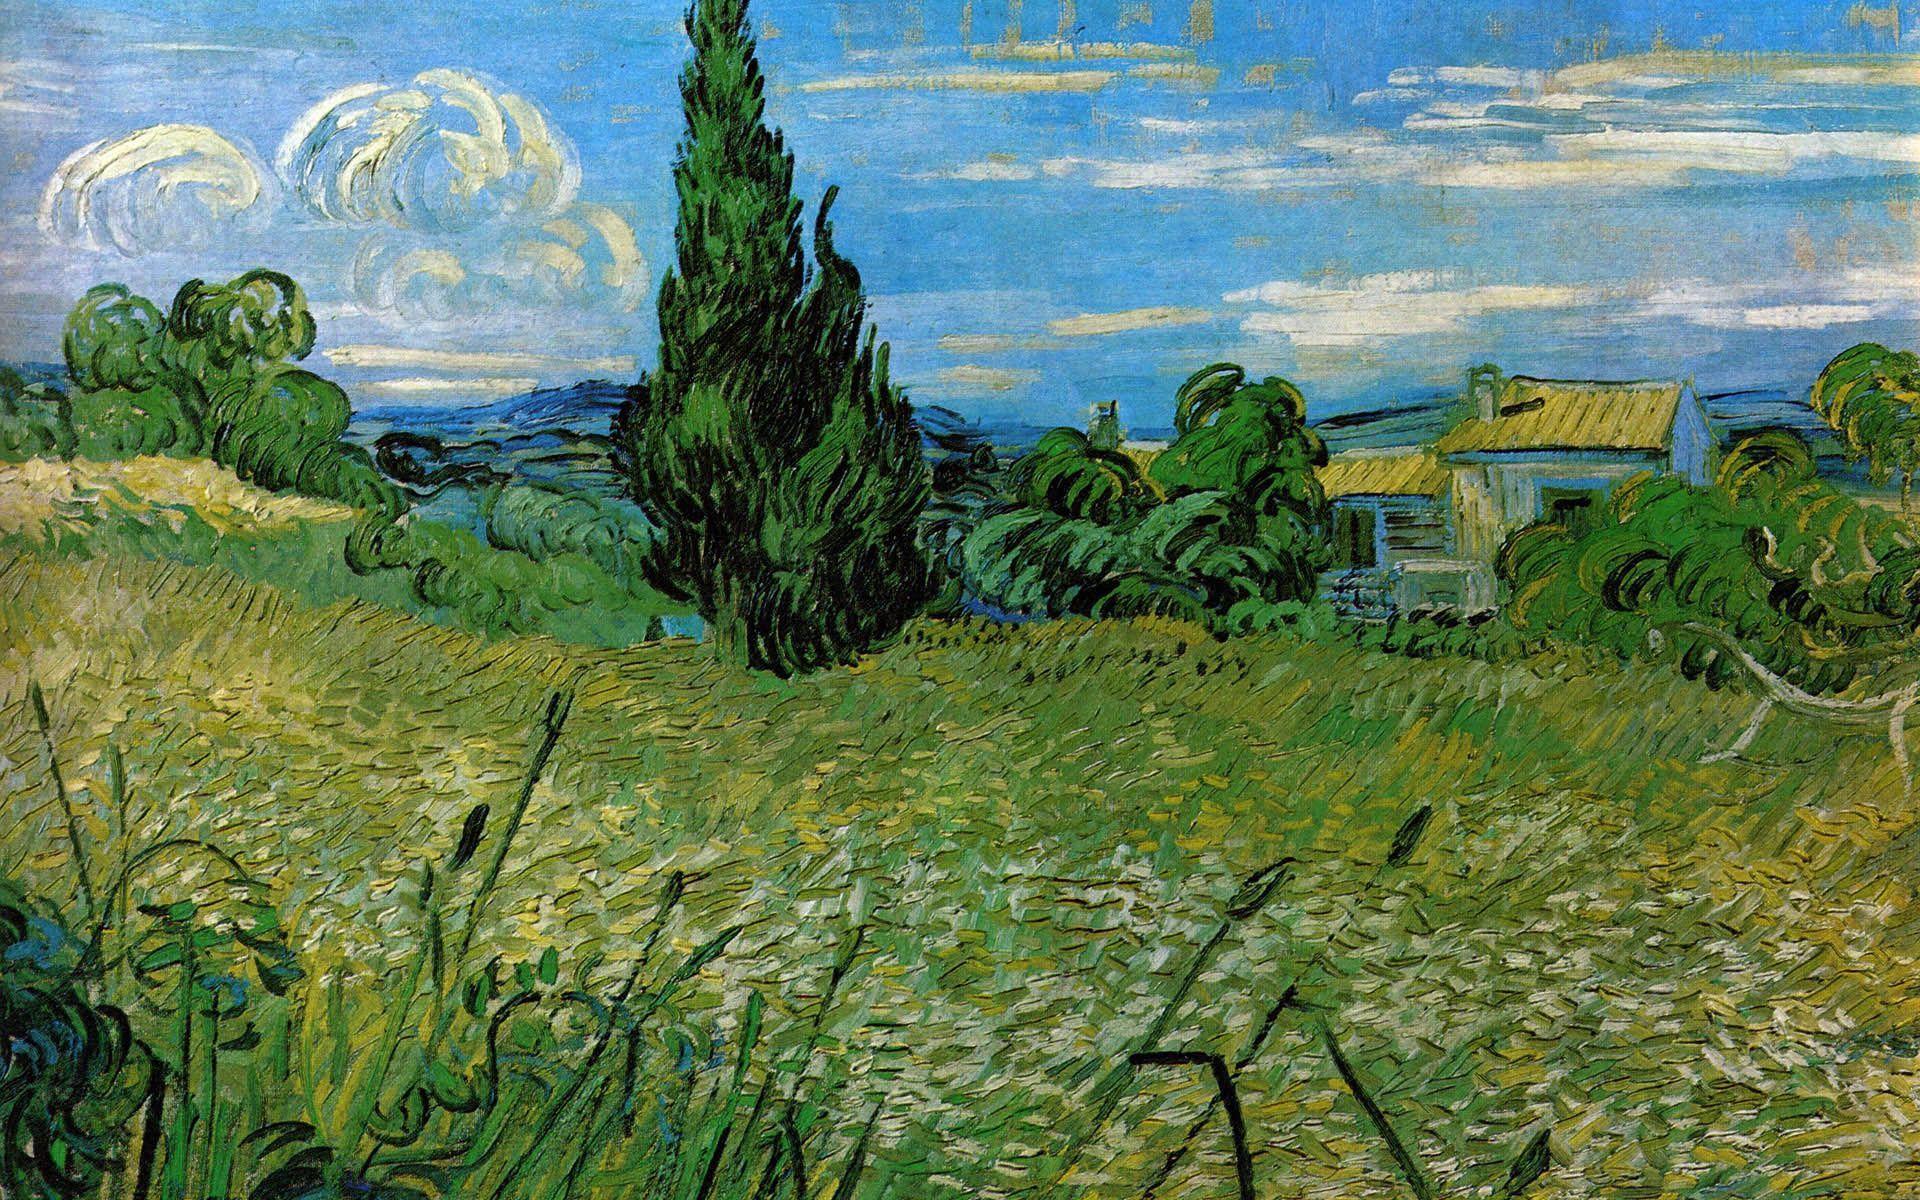 Các bức tranh của Van Gogh mang đến sự khác biệt và sự tinh tế trong nghệ thuật của ông. Với các hình nền PC được lấy cảm hứng từ tác phẩm của anh tài này, bạn sẽ được trải nghiệm một không gian làm việc và giải trí đầy sáng tạo và nghệ thuật.